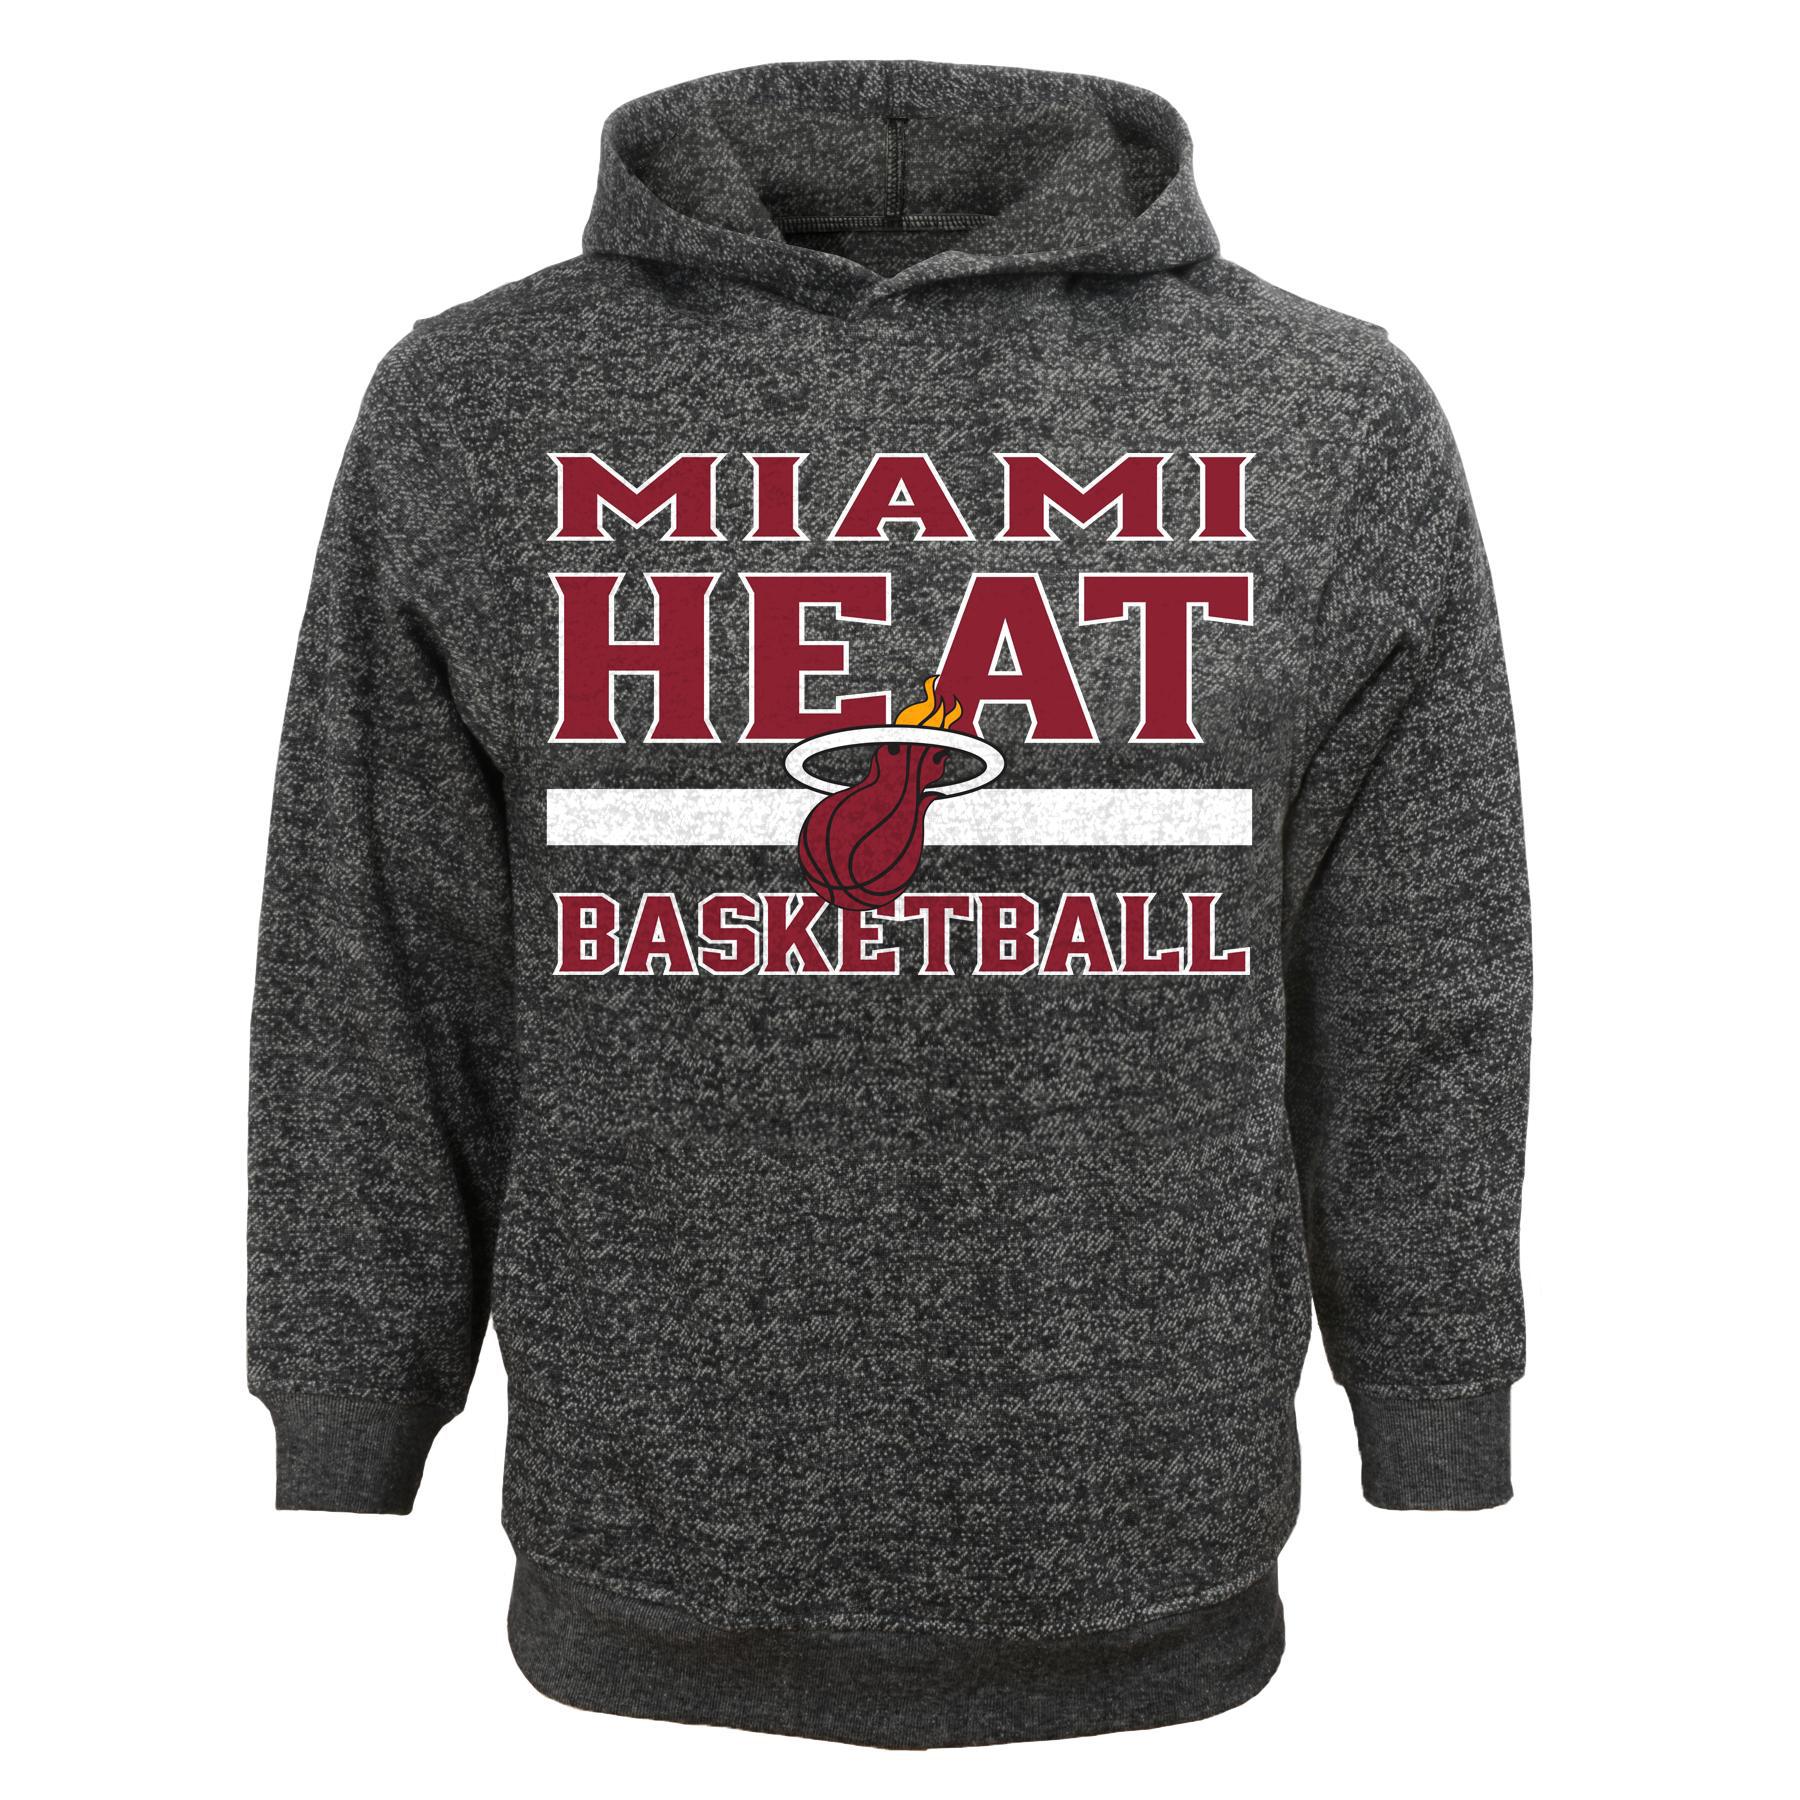 NBA Boys' Hooded Sweatshirt - Miami Heat